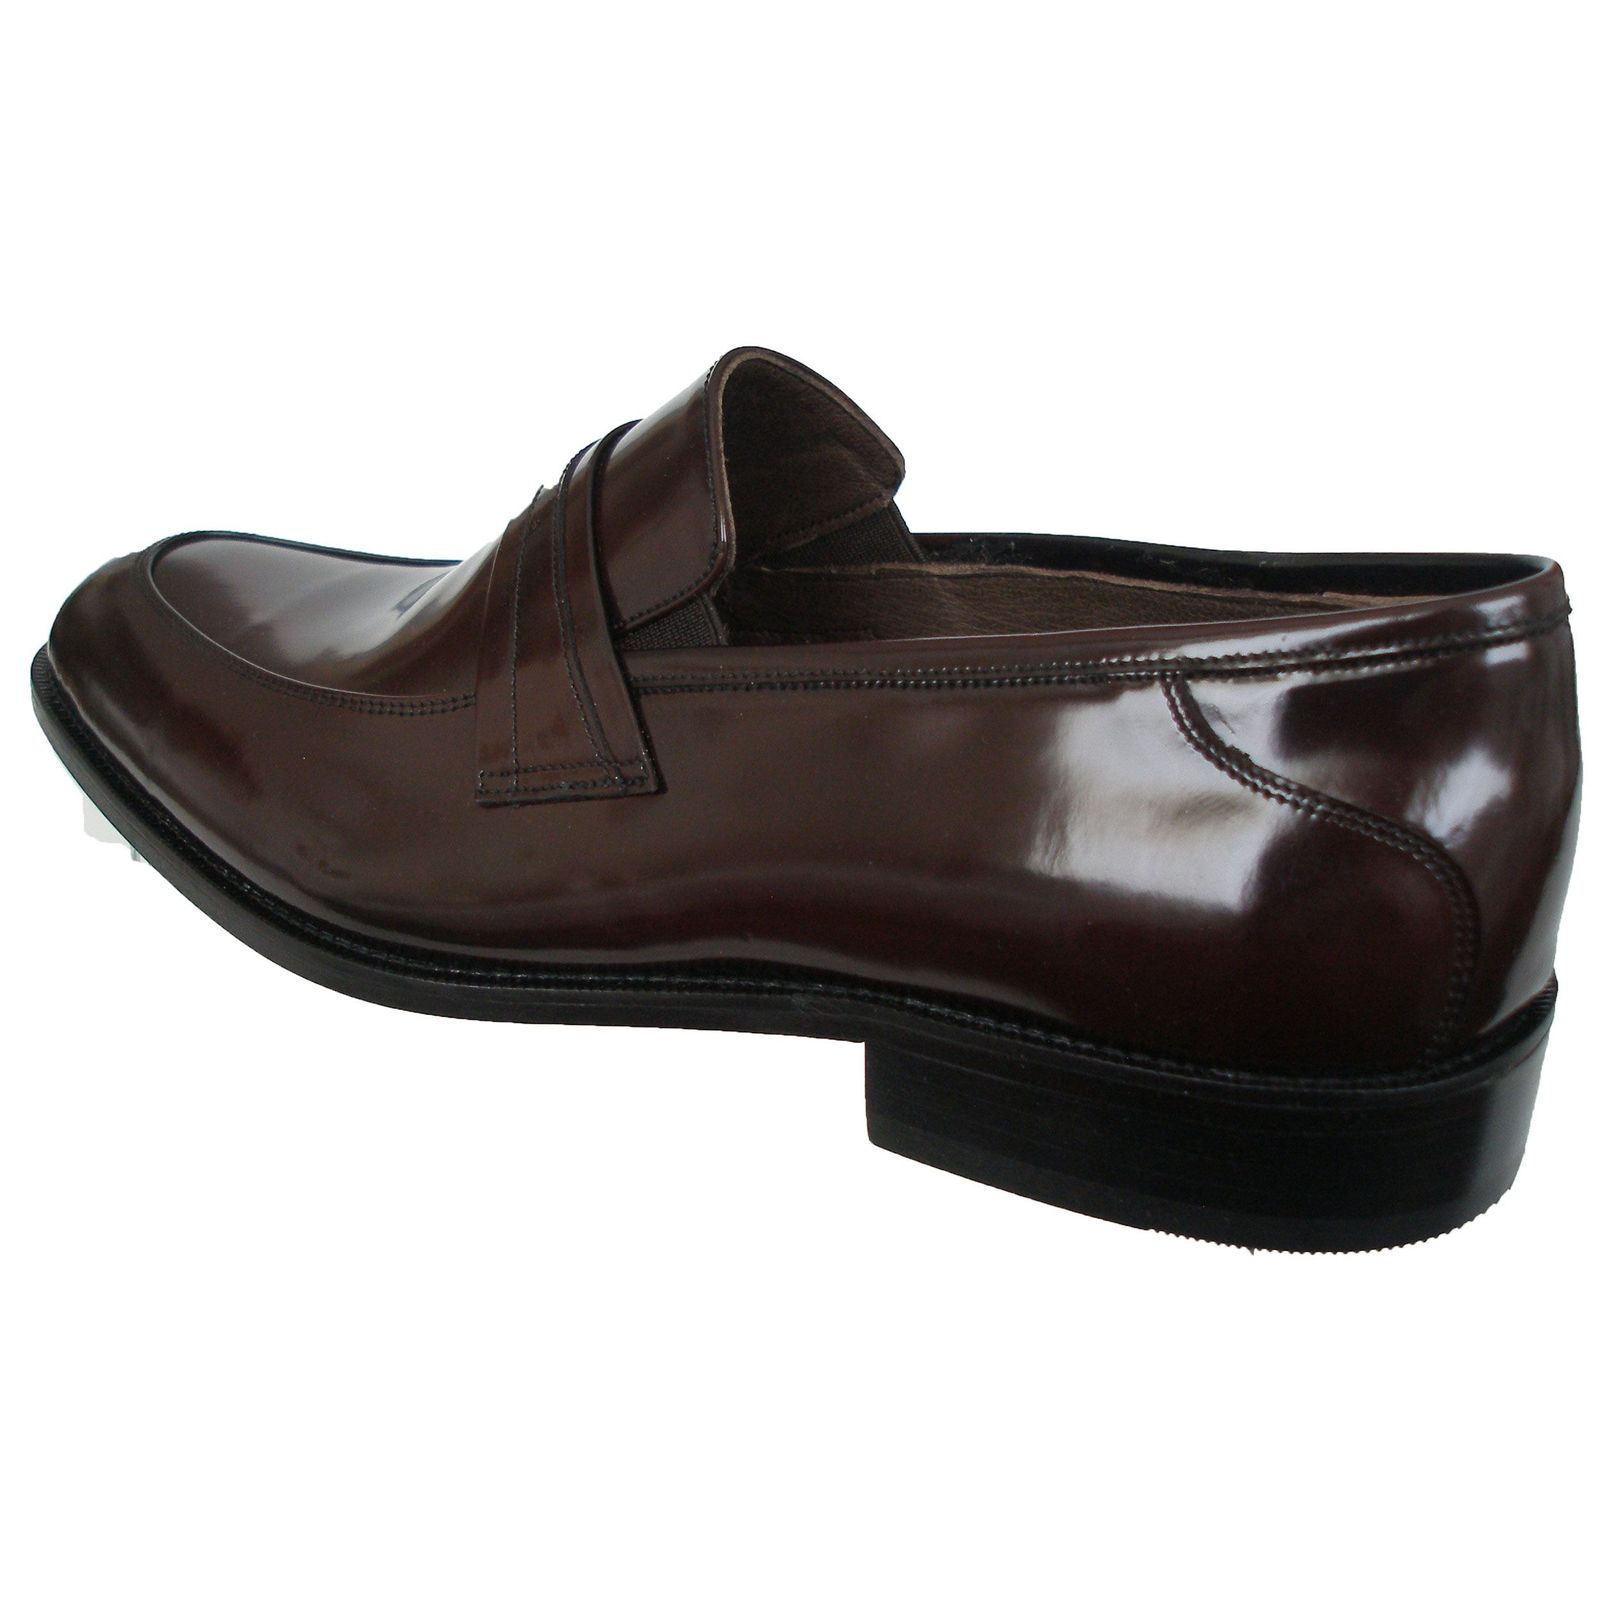 کفش رسمی مردانه مدل790339 رنگ قهوه ای